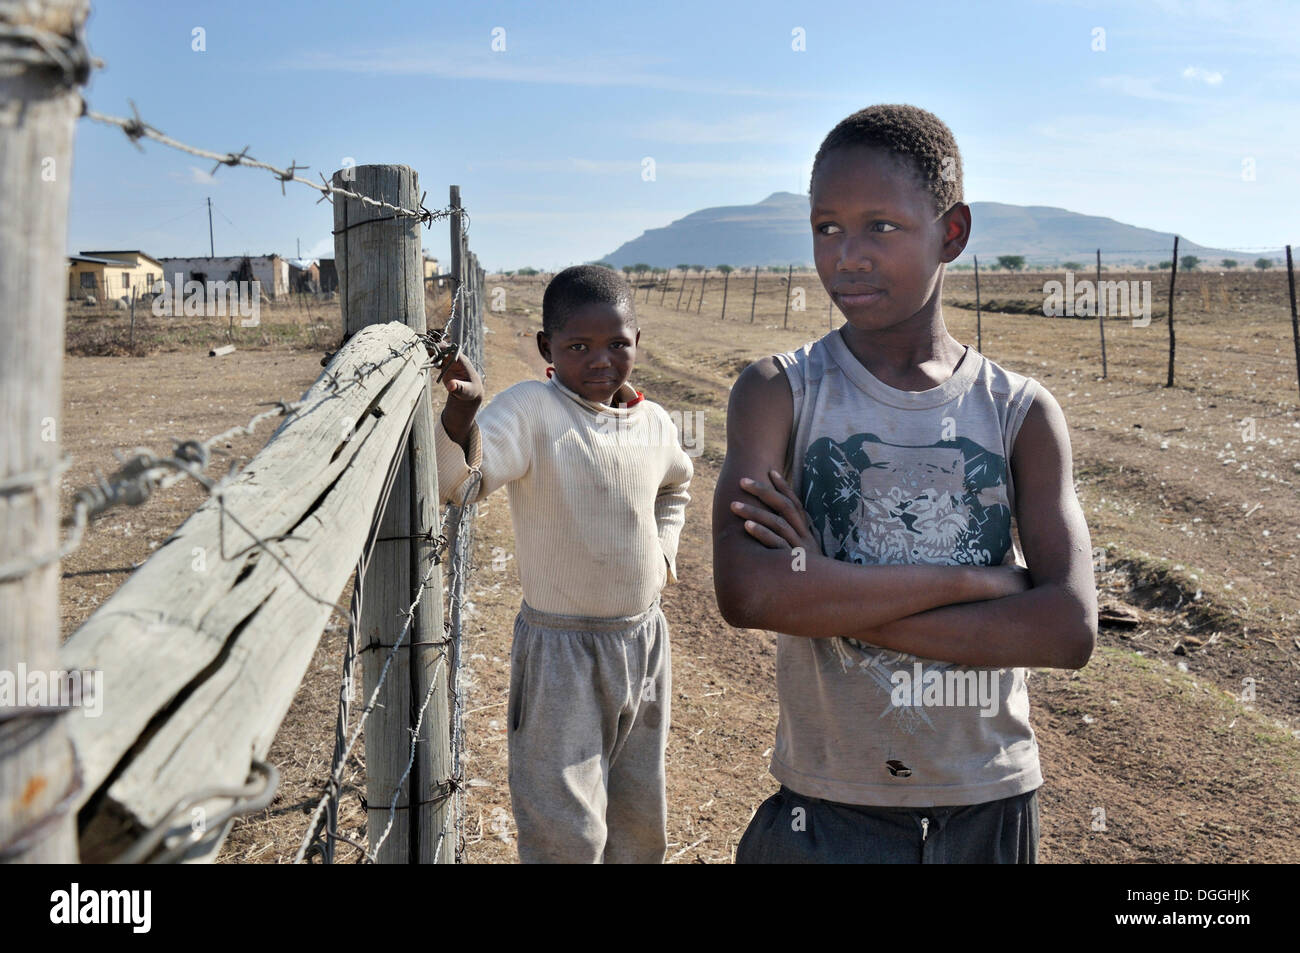 Zwei jungen auf der Straße, Lady Frere, Eastern Cape, Südafrika, Afrika Stockfoto